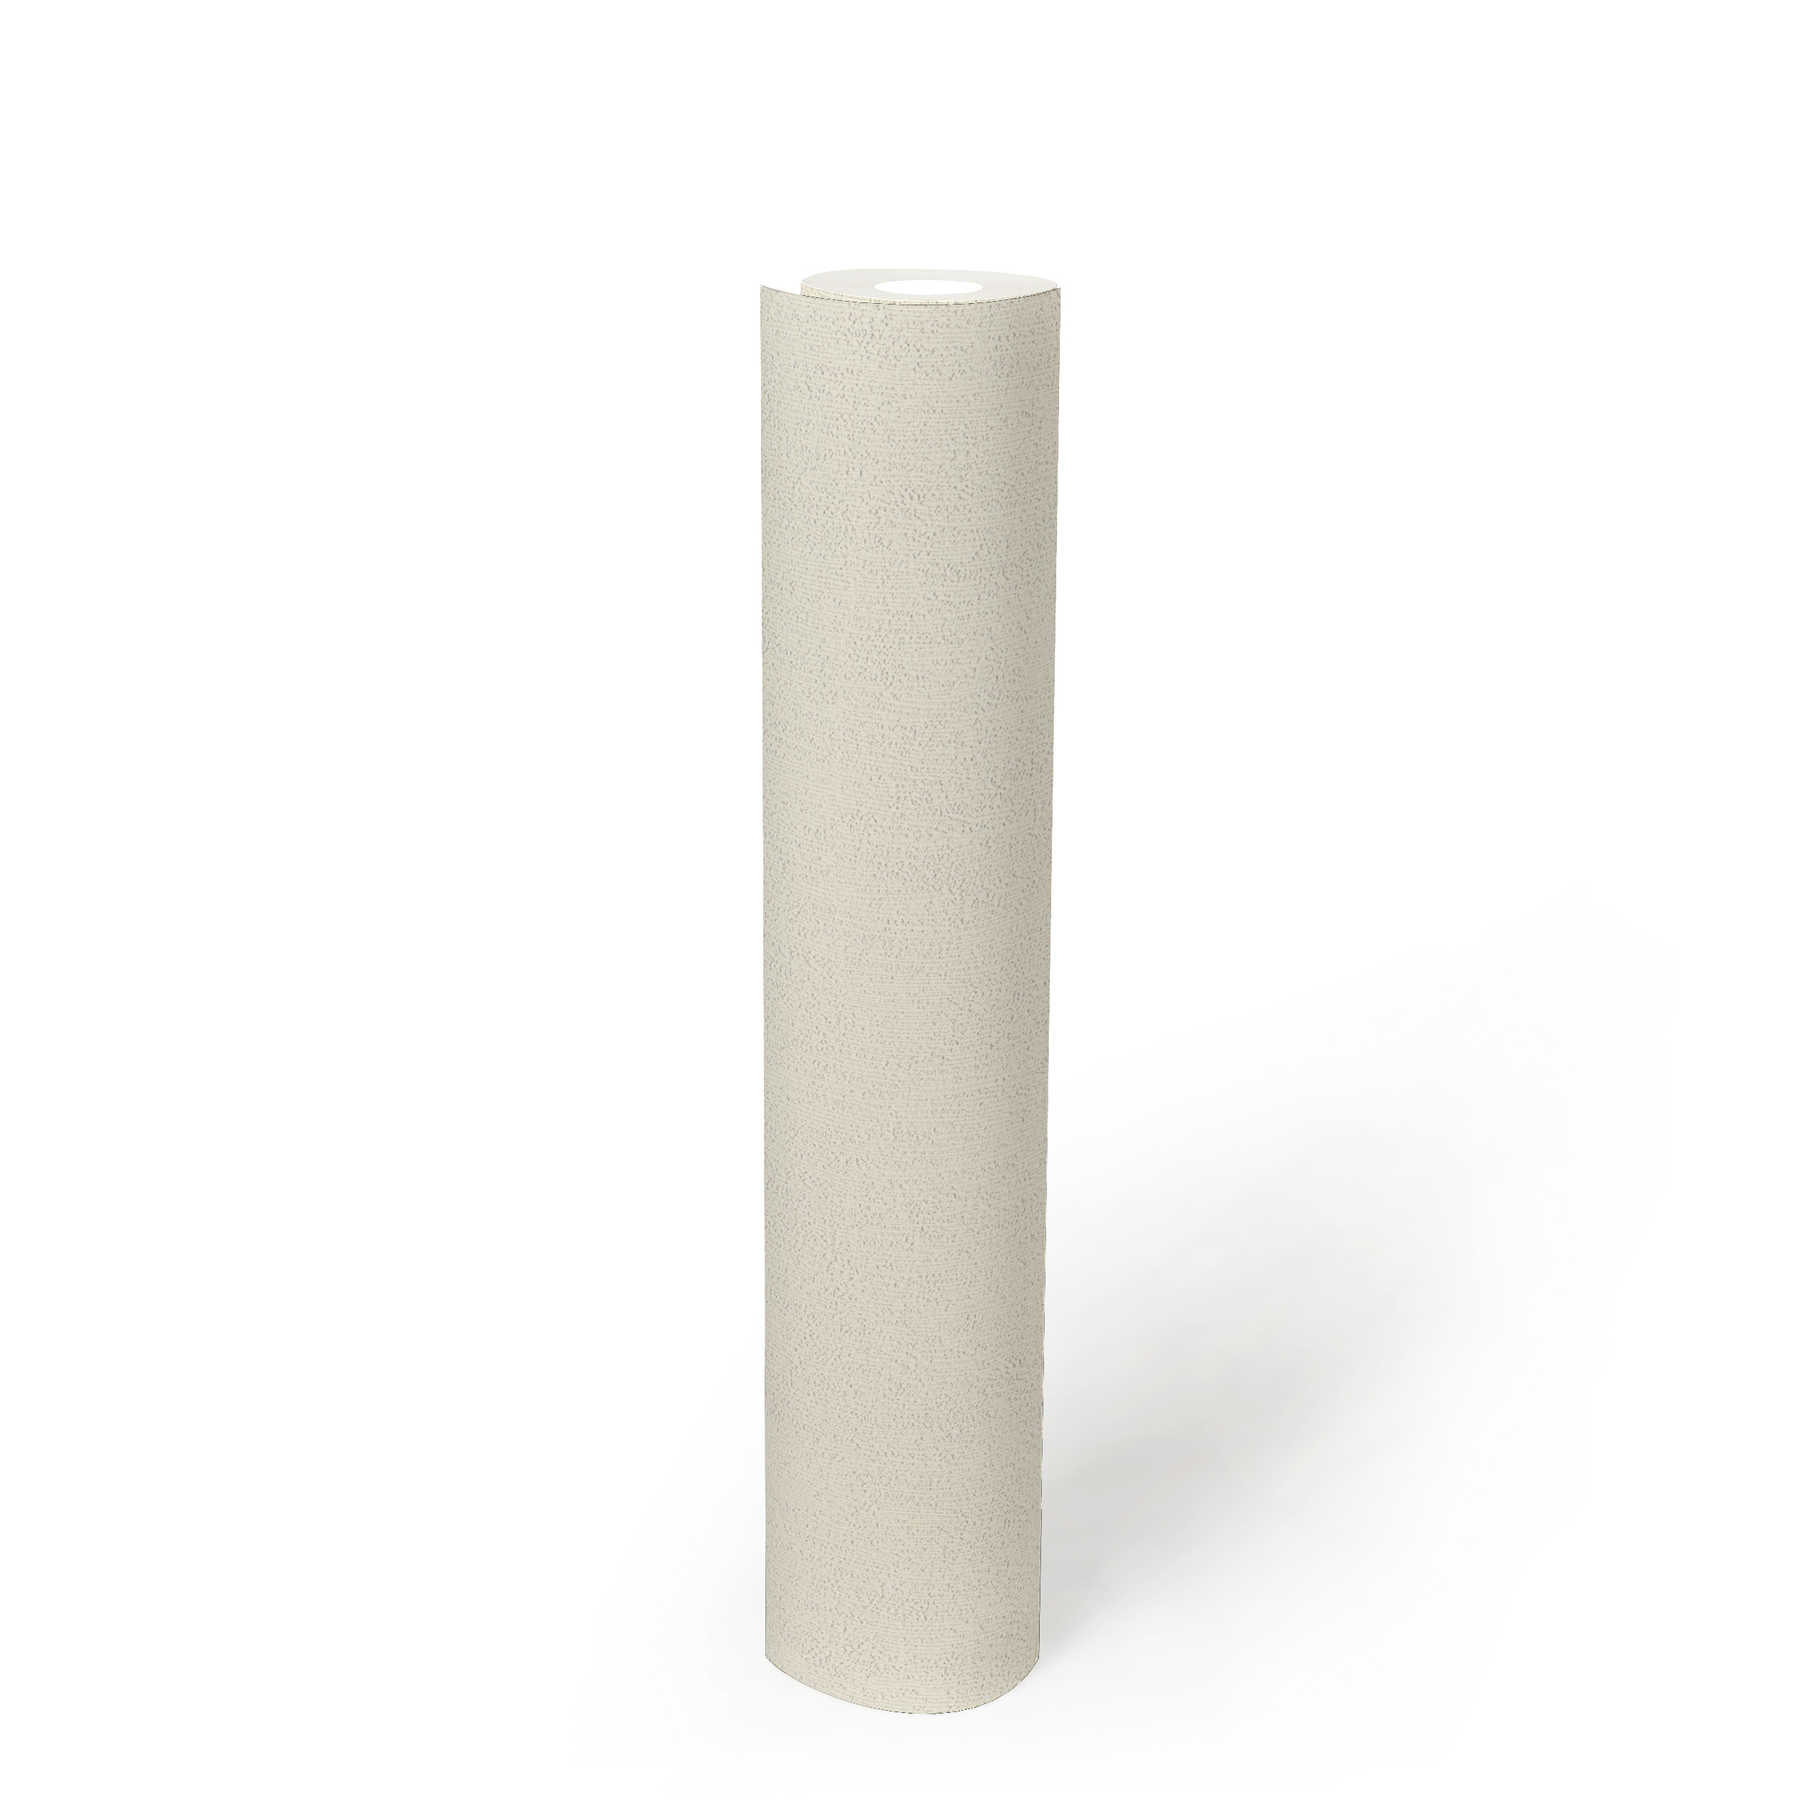             Unifarbene Tapete Weiß mit gemaserter Holz-Struktur
        